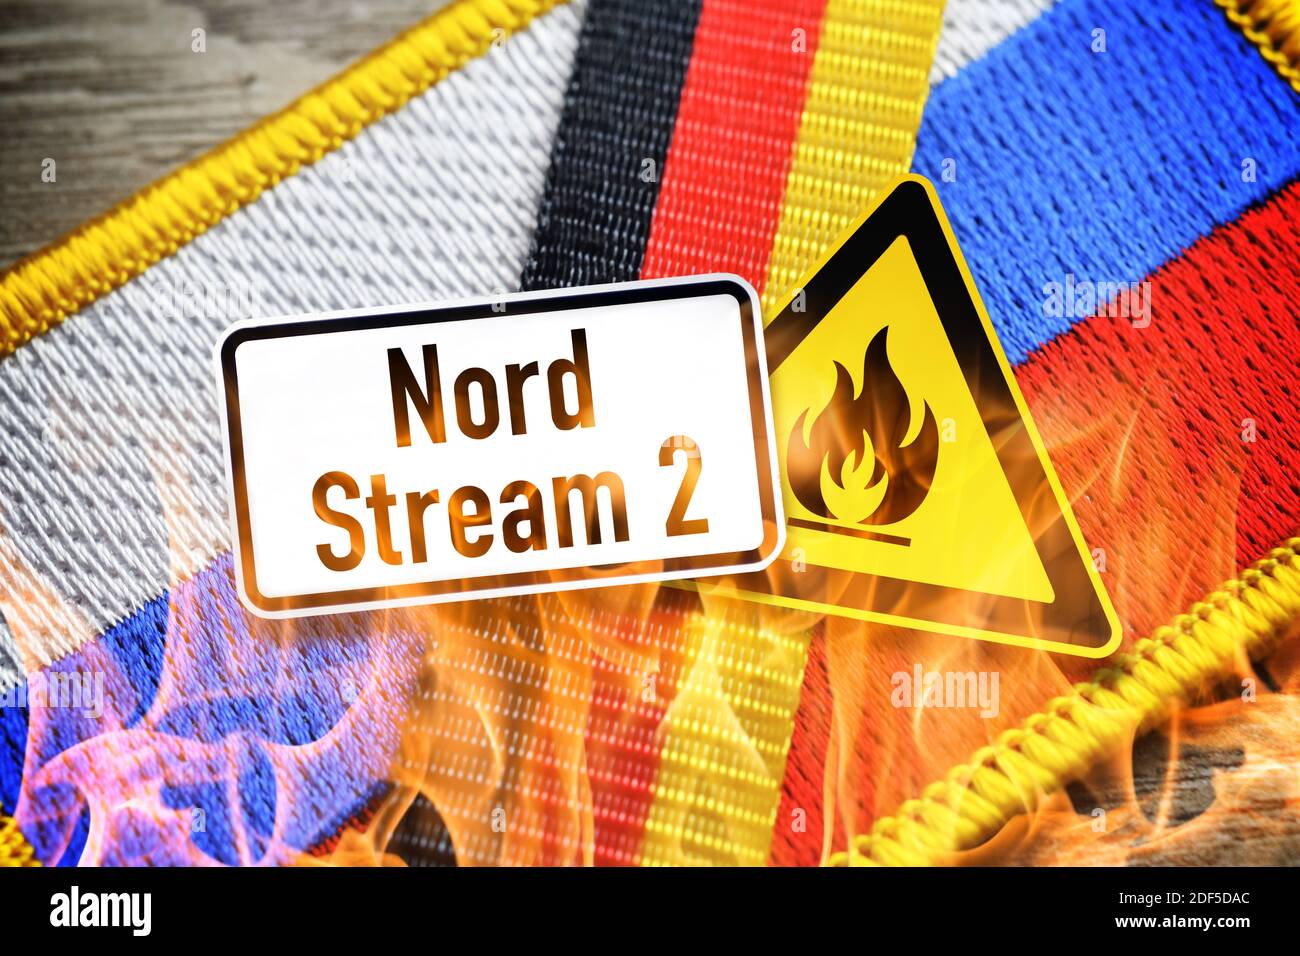 Nord Stream 2 señal de advertencia en las banderas de Rusia y Alemania, el gasoducto del Mar Báltico Foto de stock